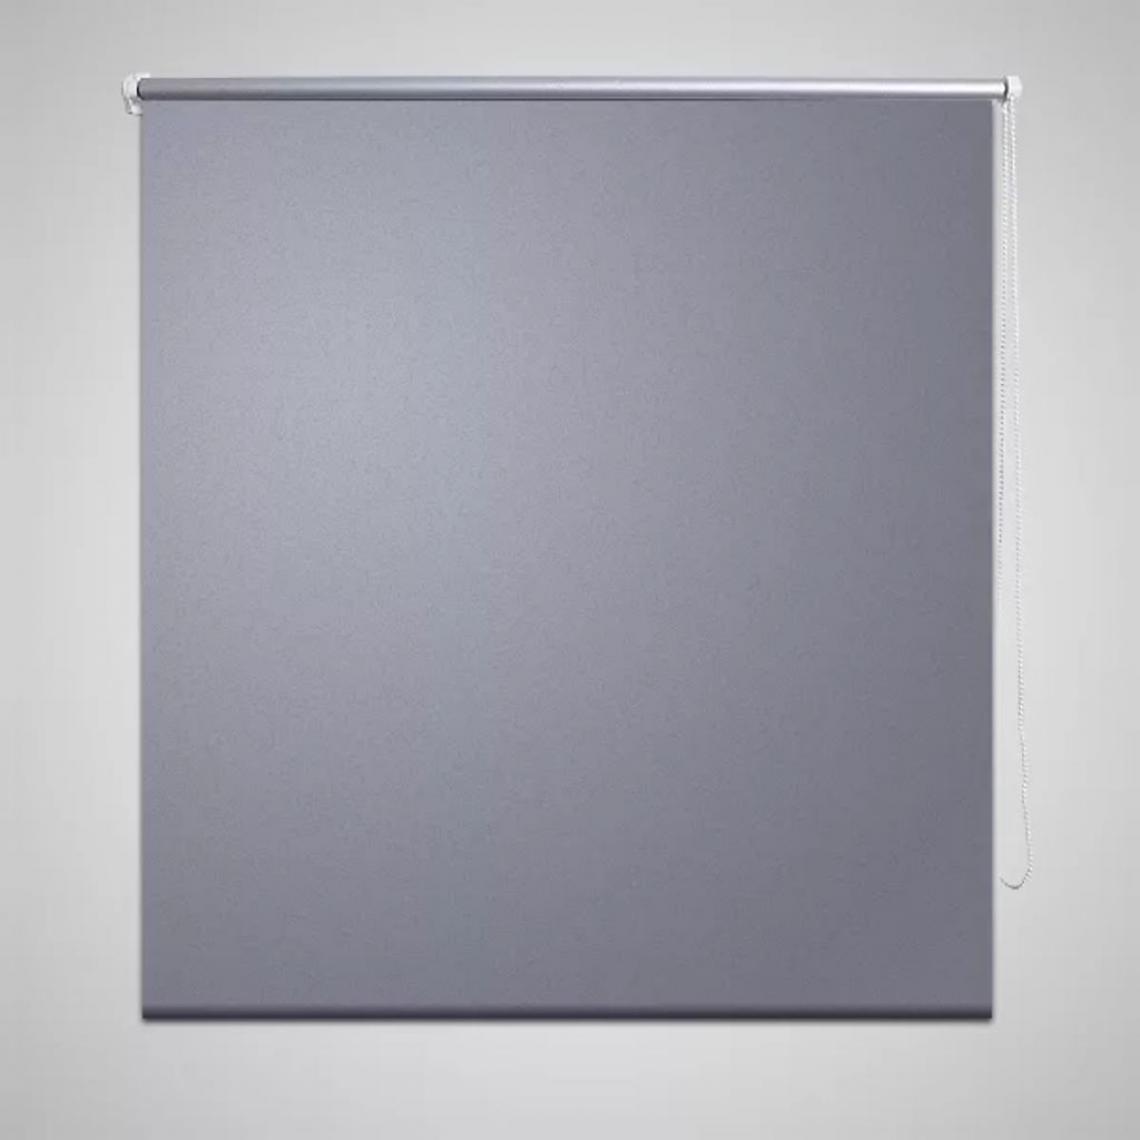 Hucoco - Store enrouleur occultant gris 40 x 100 cm - Gris - Store compatible Velux